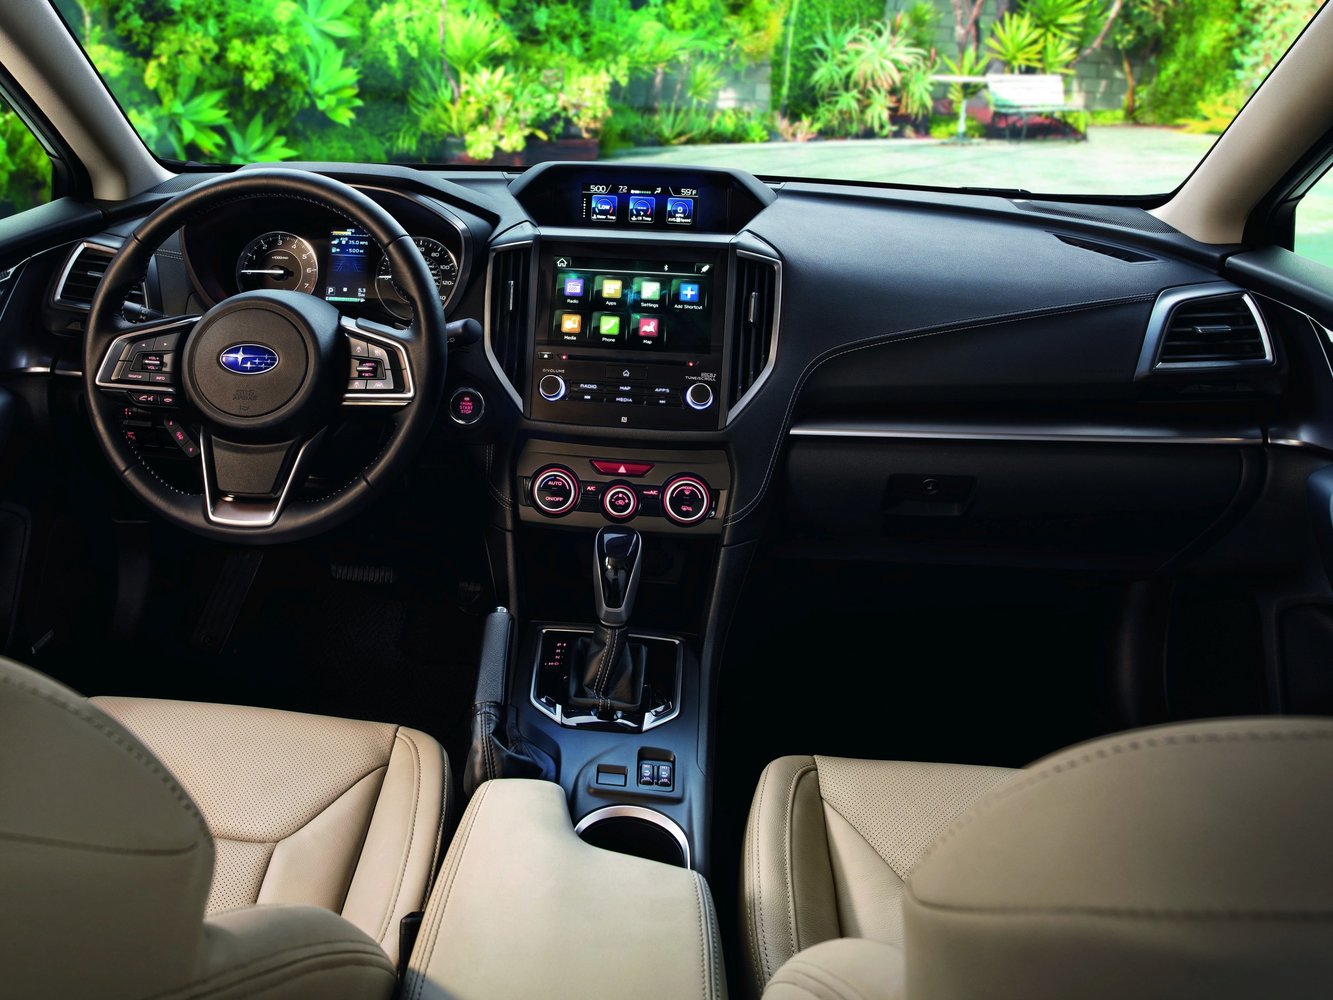 хэтчбек 5 дв. Subaru Impreza 2016г выпуска модификация 2.0 CVT (152 л.с.) 4×4